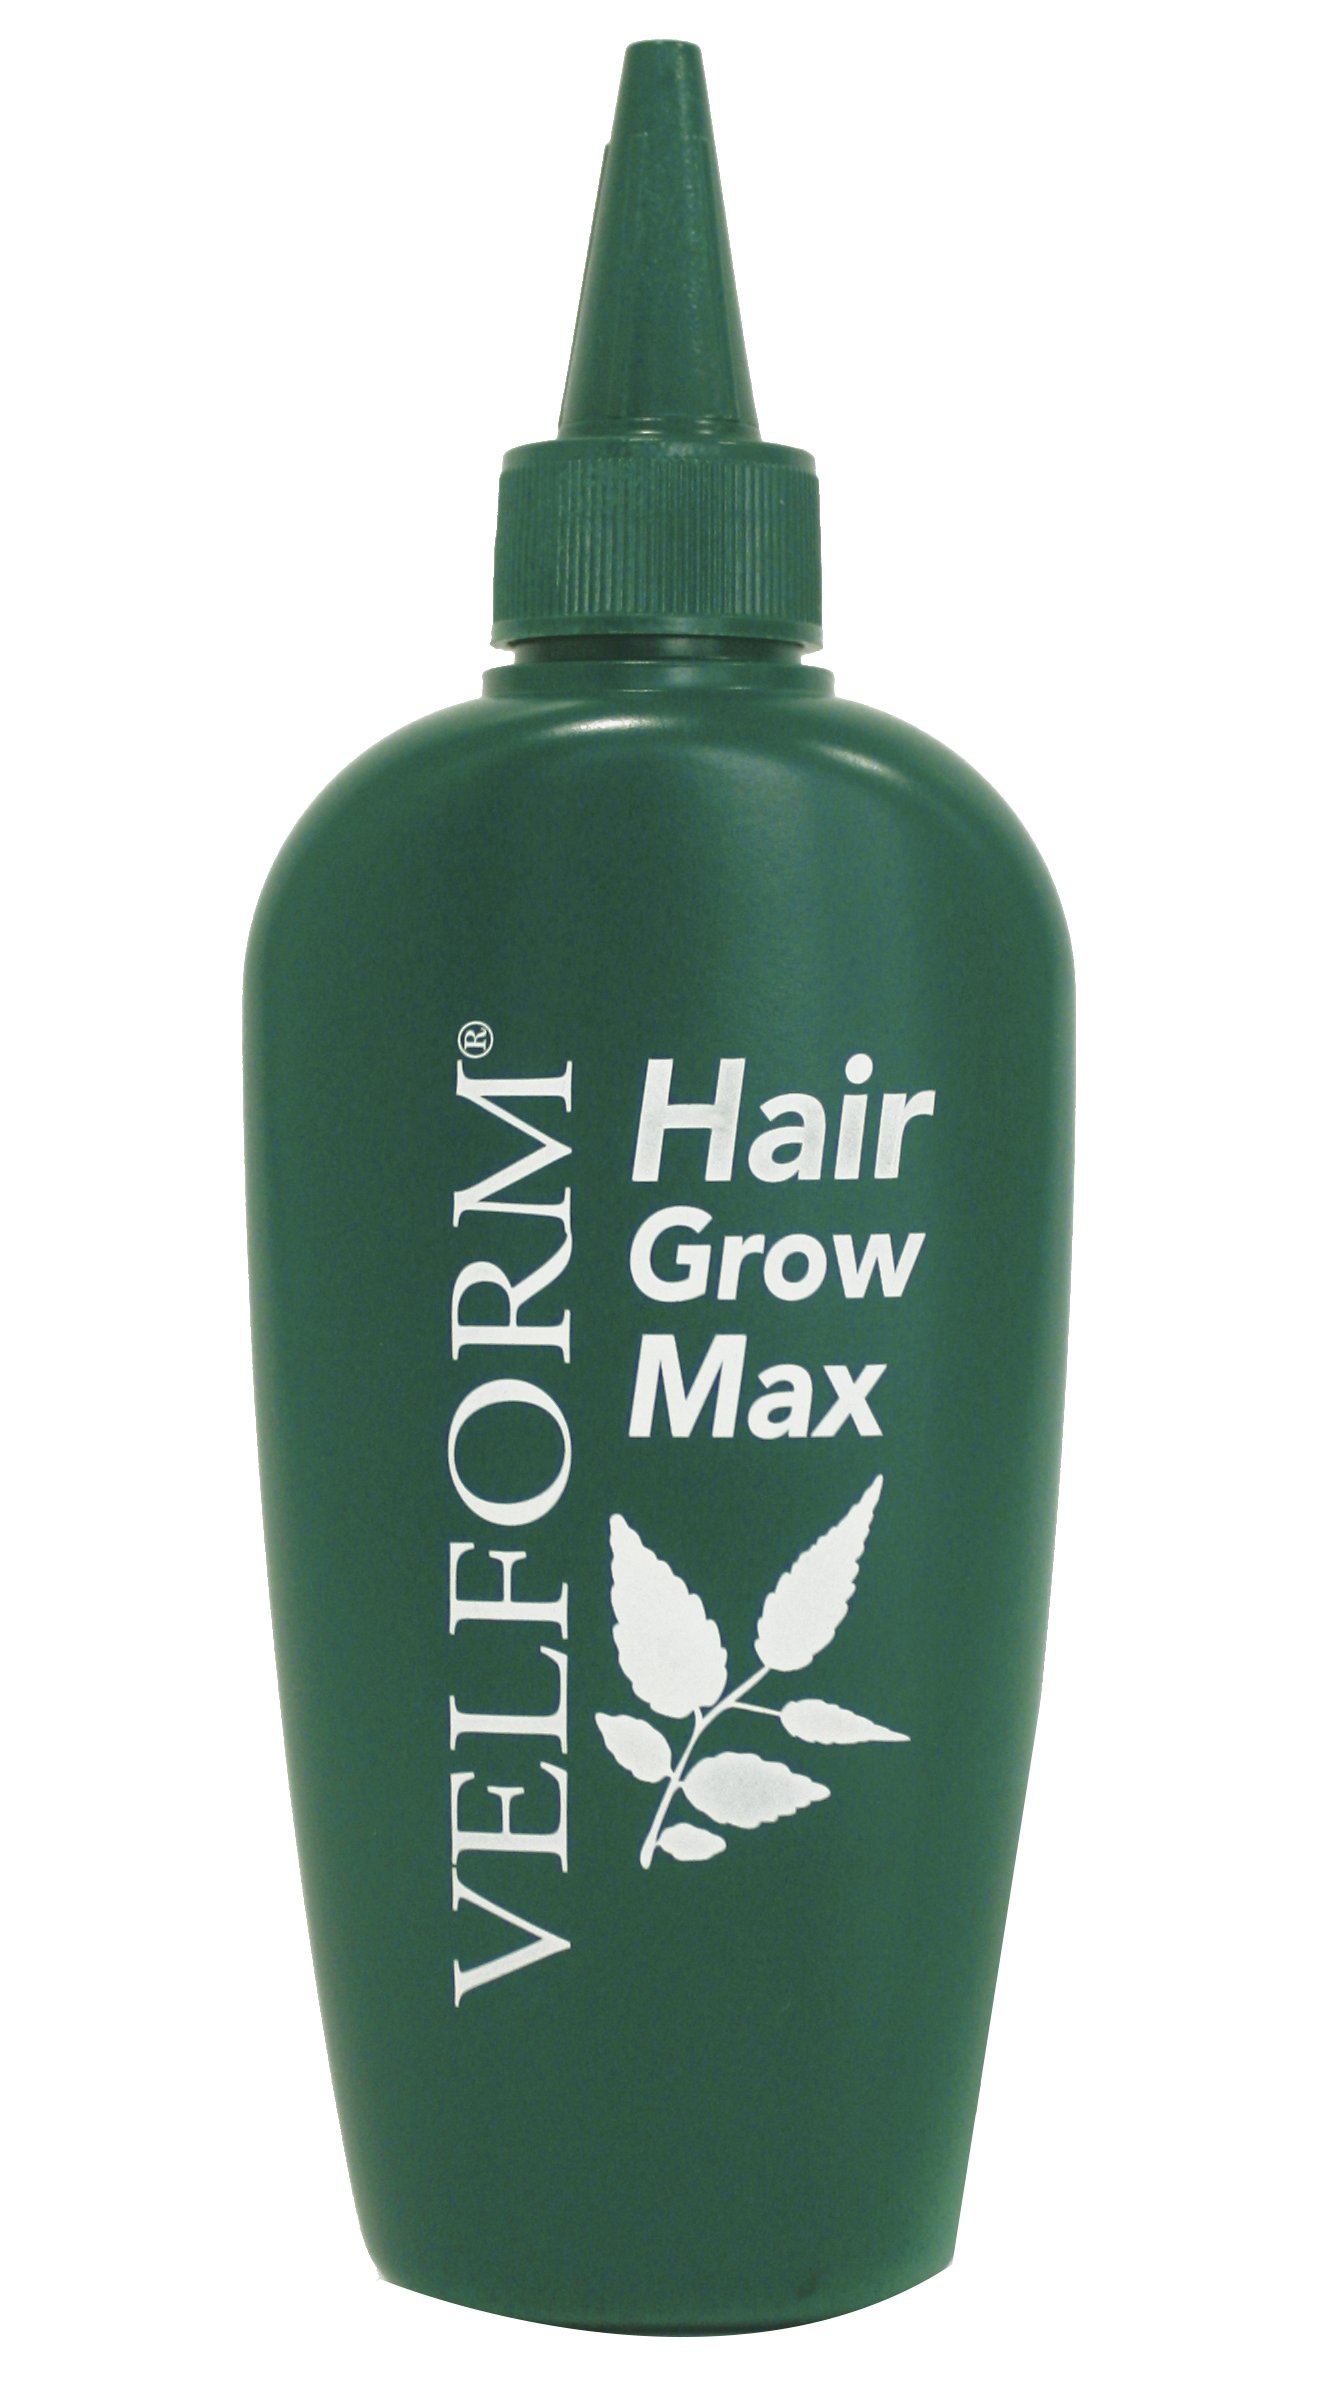 Velform Hair Grow Max - Haarwuchsmittel - 200ml